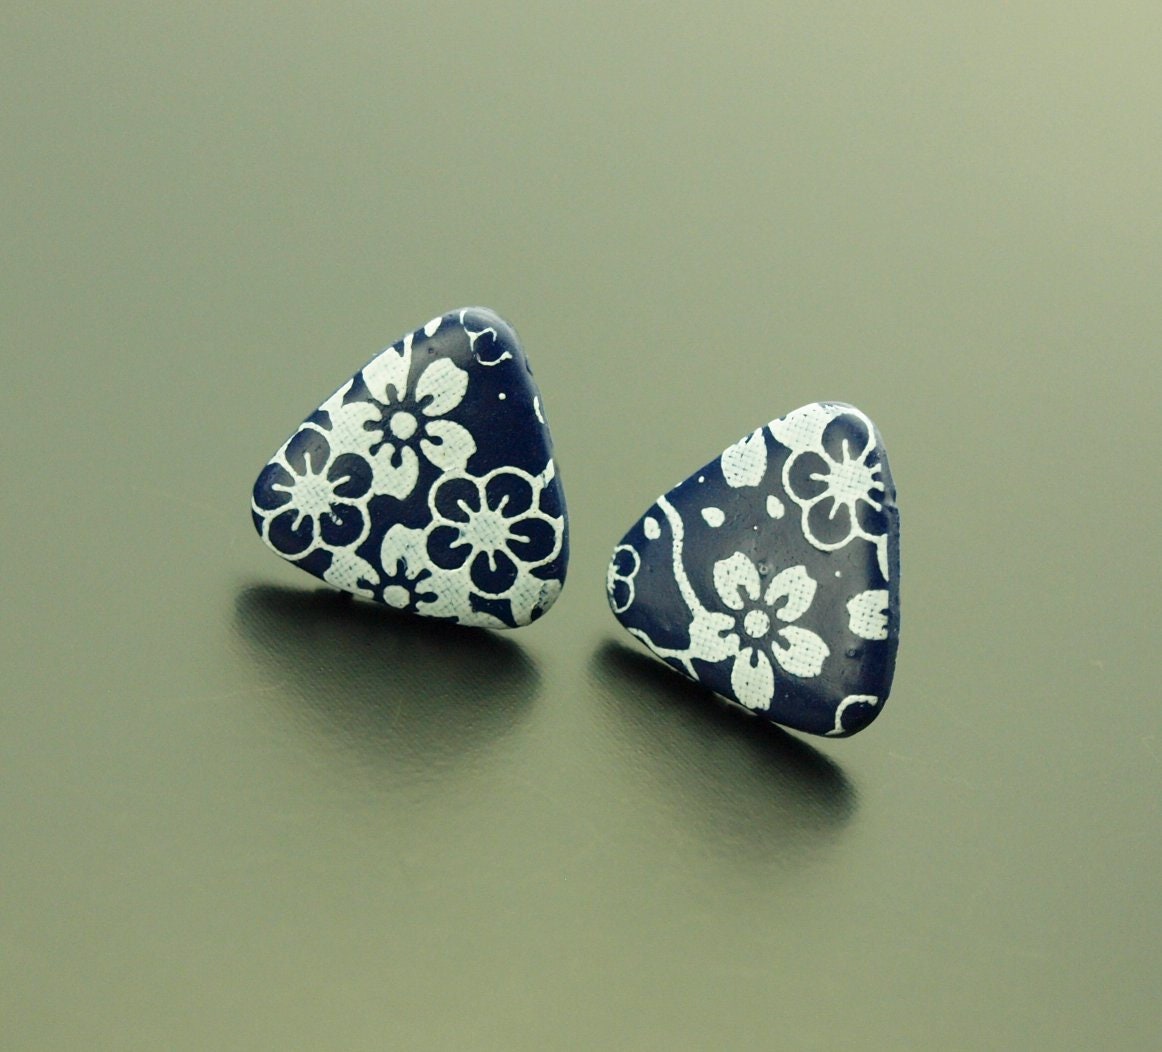 Ohrstecker nach Wahl Viereck Dreieck rund retro Muster Blumen Blüten Linien weiß blau Polymer Clay Fimo Ohrringe Stecker